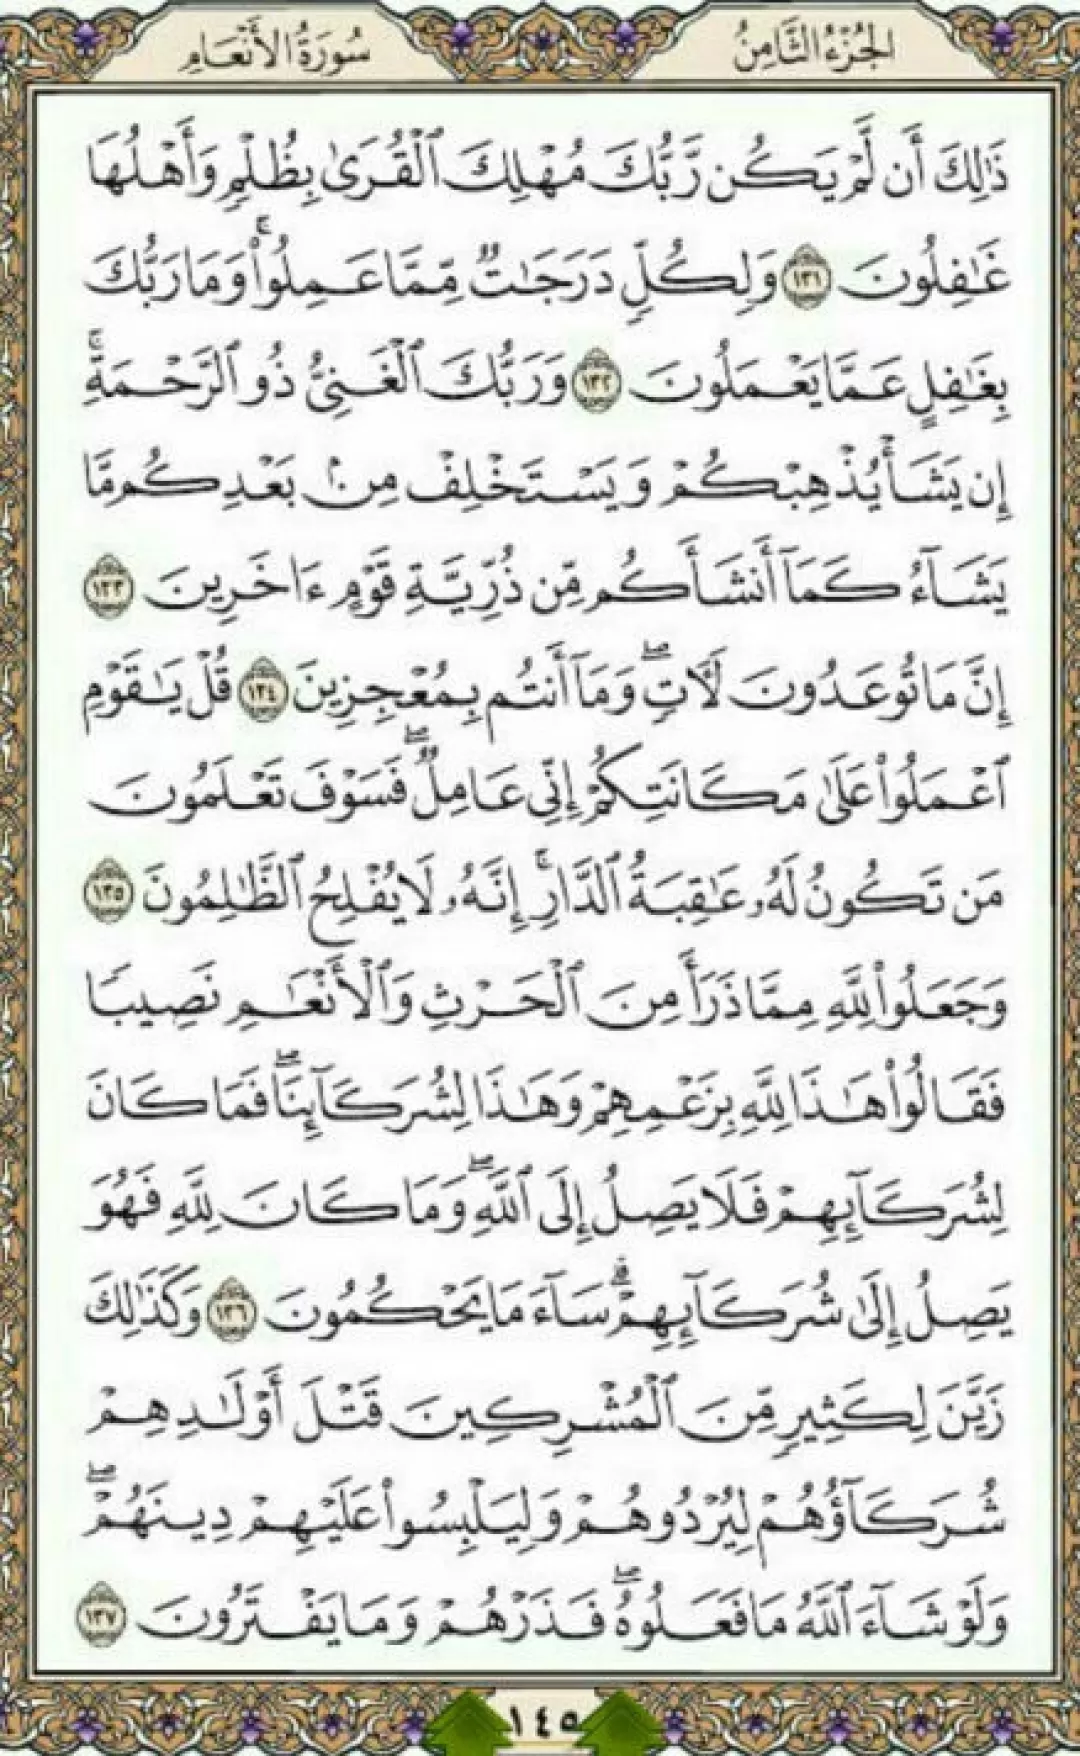 روزانه یک صفحه با انوار الهی قرآن مجید